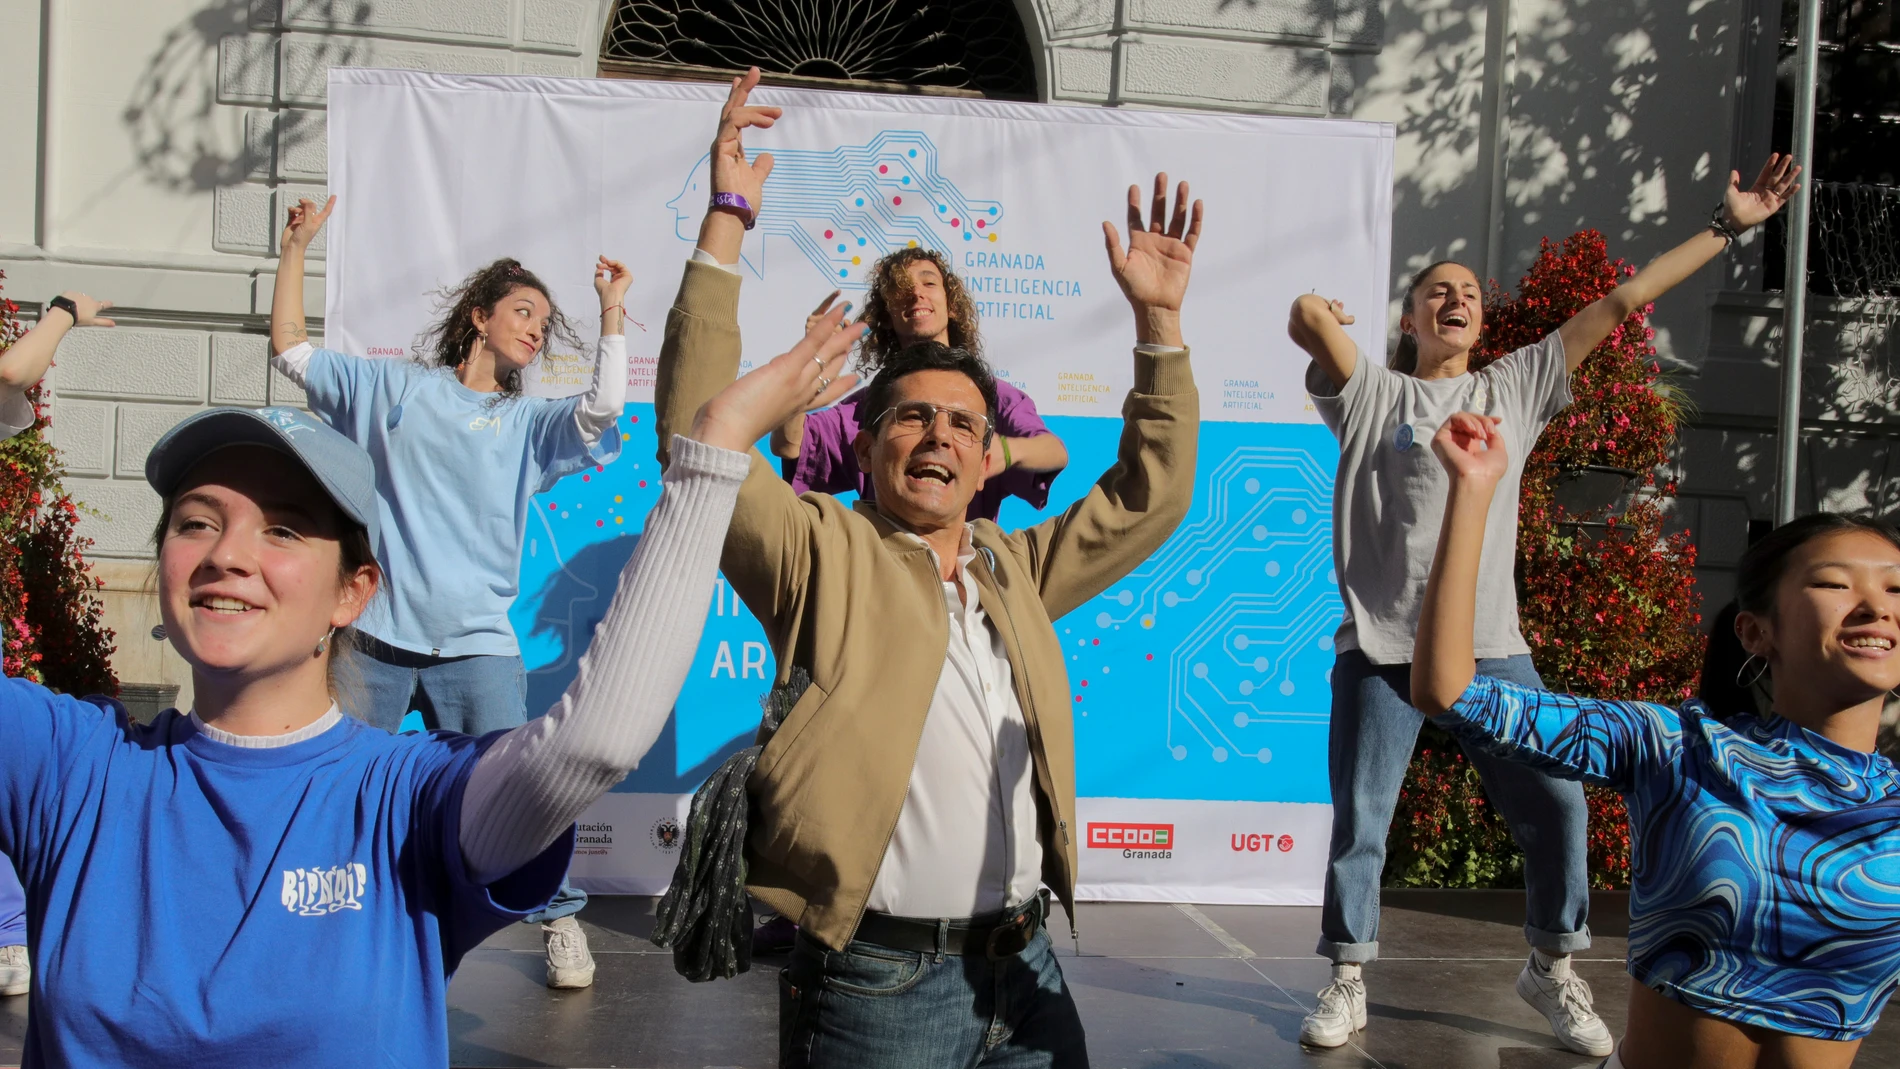 El alcalde de Granada, Paco Cuenca participa en el espectáculo de flasmob multitudinario celebrado este domingo en la plaza del Carmen de Granada